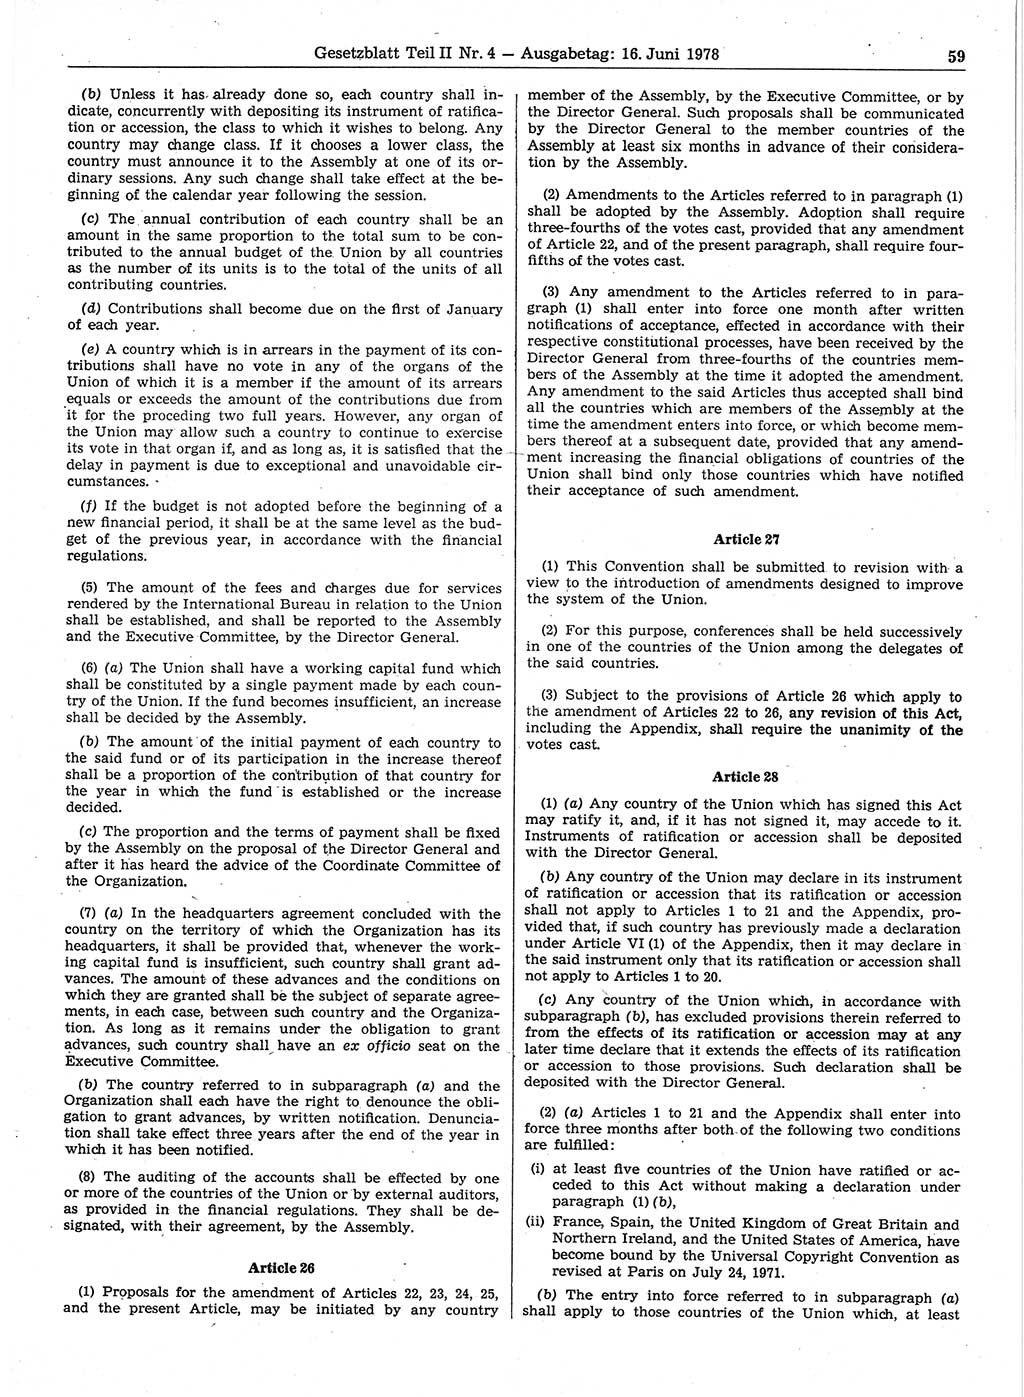 Gesetzblatt (GBl.) der Deutschen Demokratischen Republik (DDR) Teil ⅠⅠ 1978, Seite 59 (GBl. DDR ⅠⅠ 1978, S. 59)